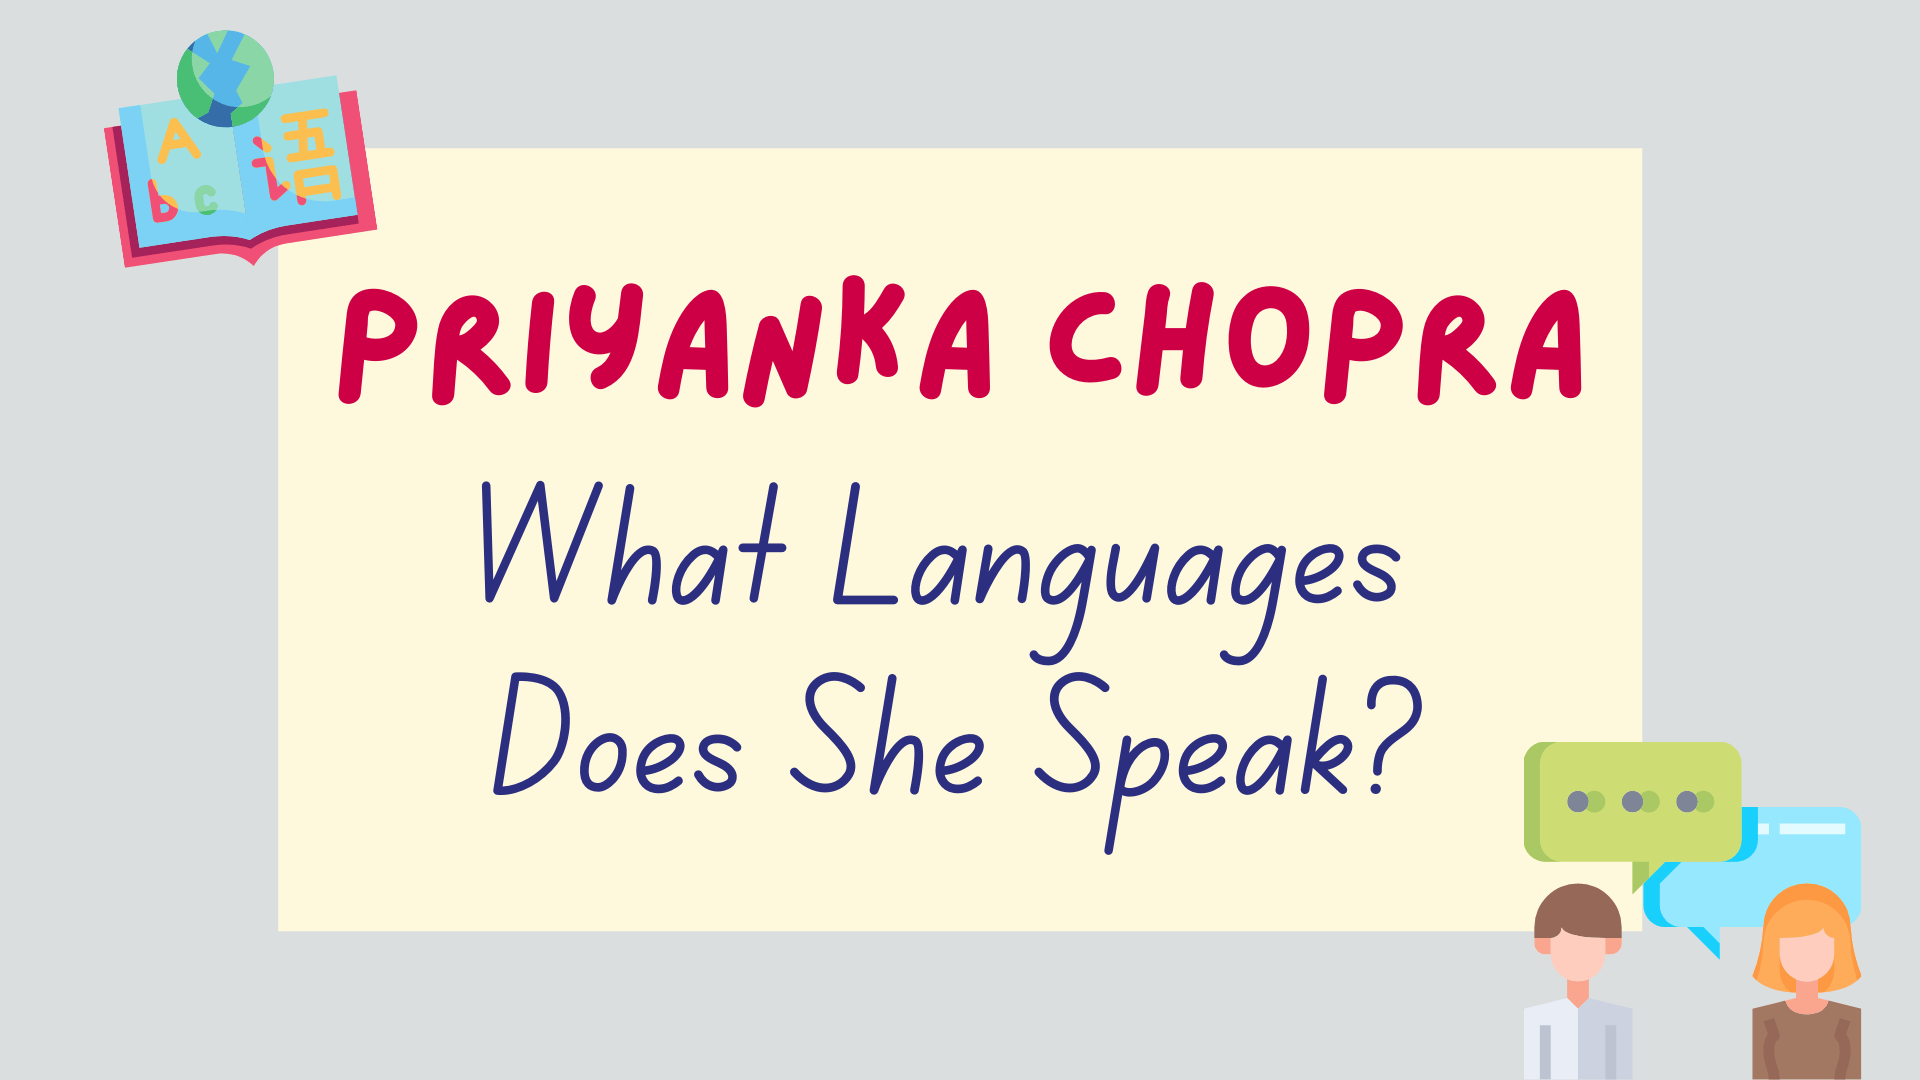 What languages does Priyanka Chopra speak? - featured image